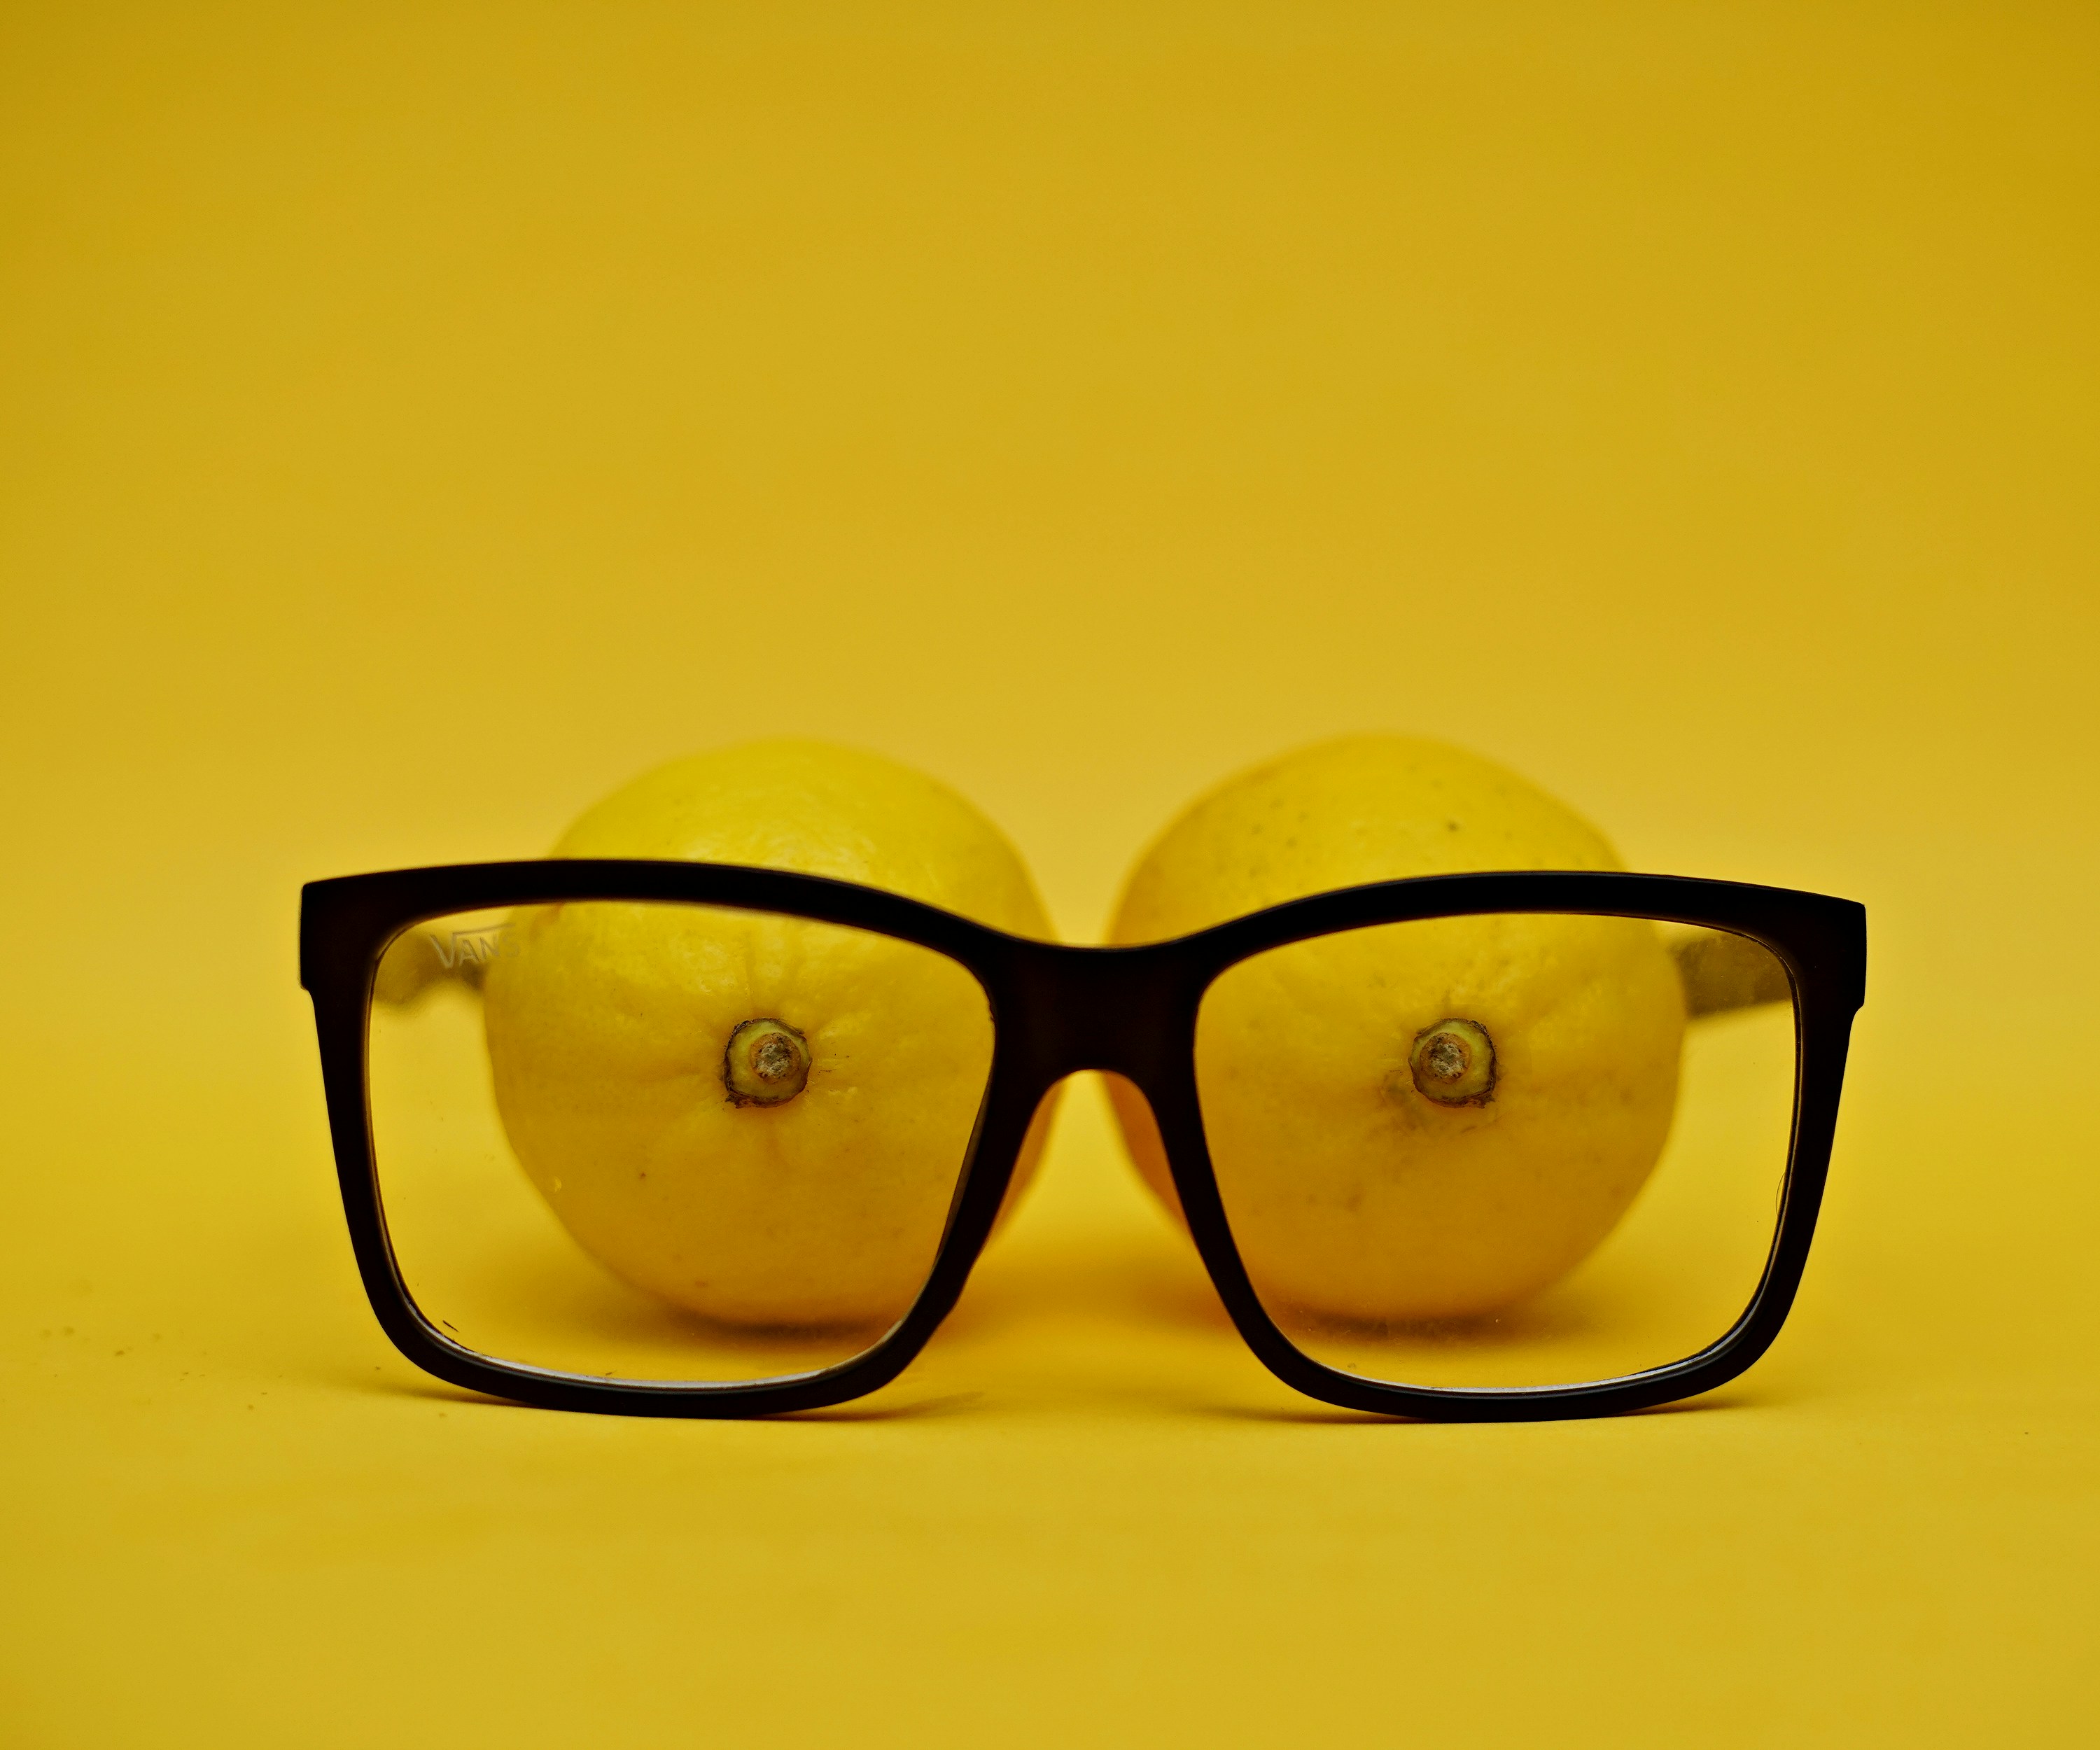 lemons seen inside eyeglasses